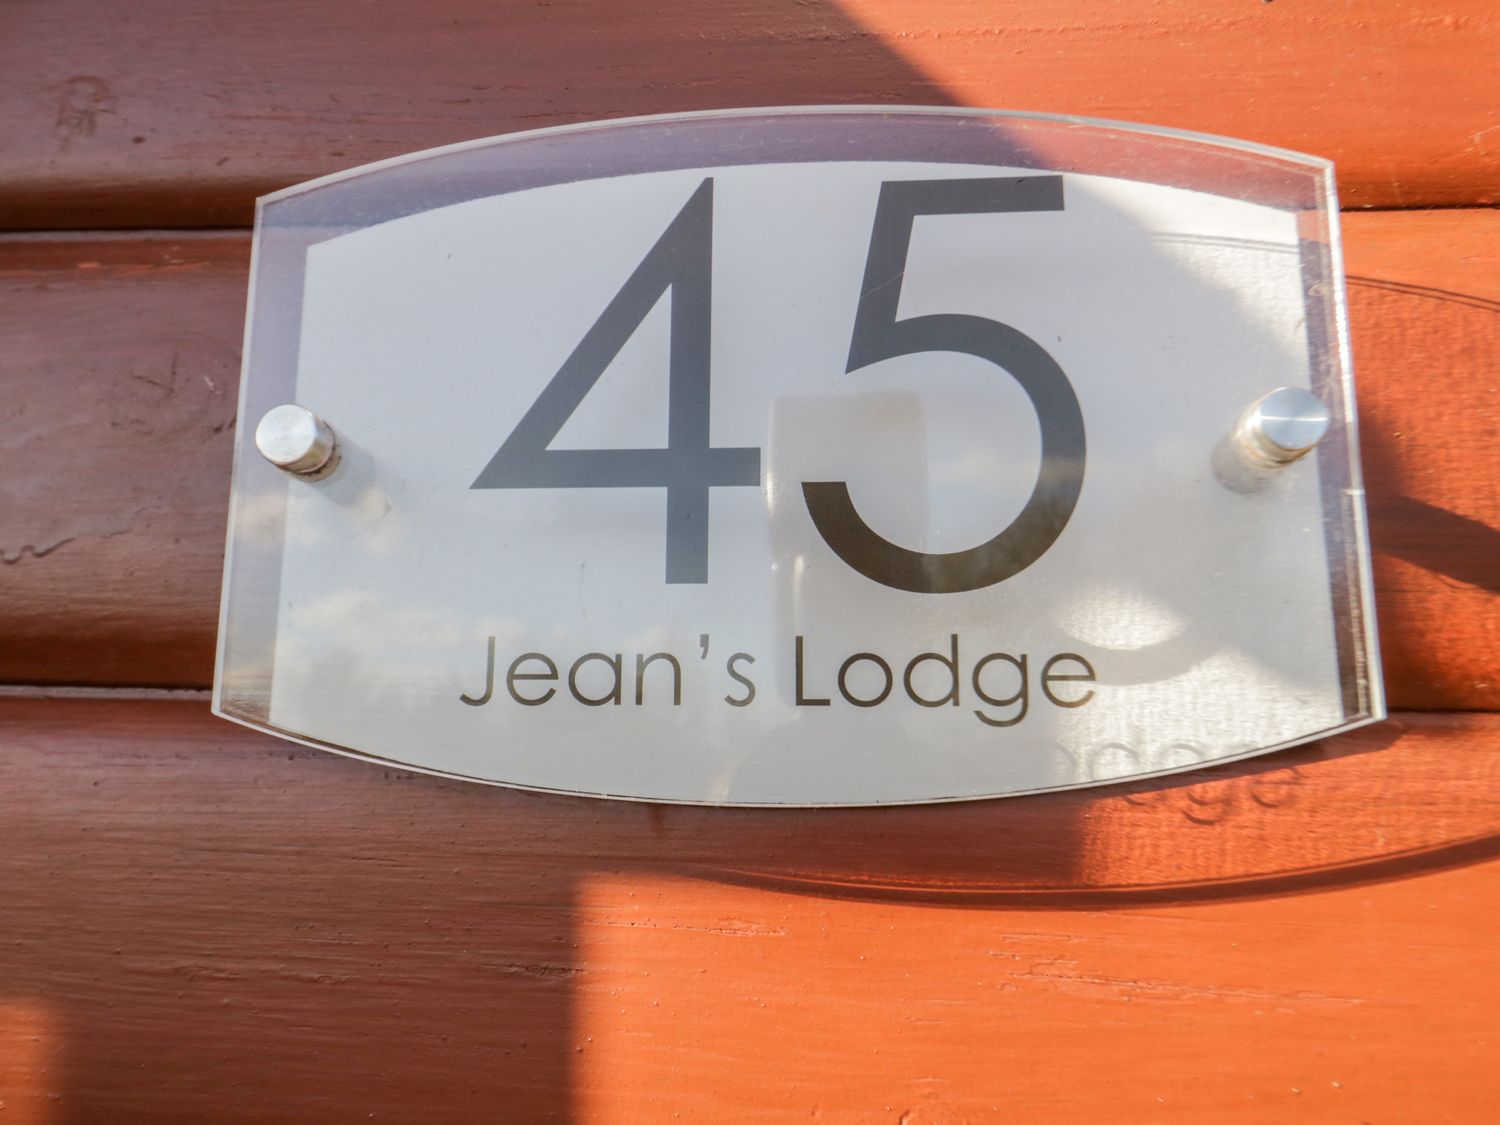 Jean's Lodge- Malton Grange, Malton